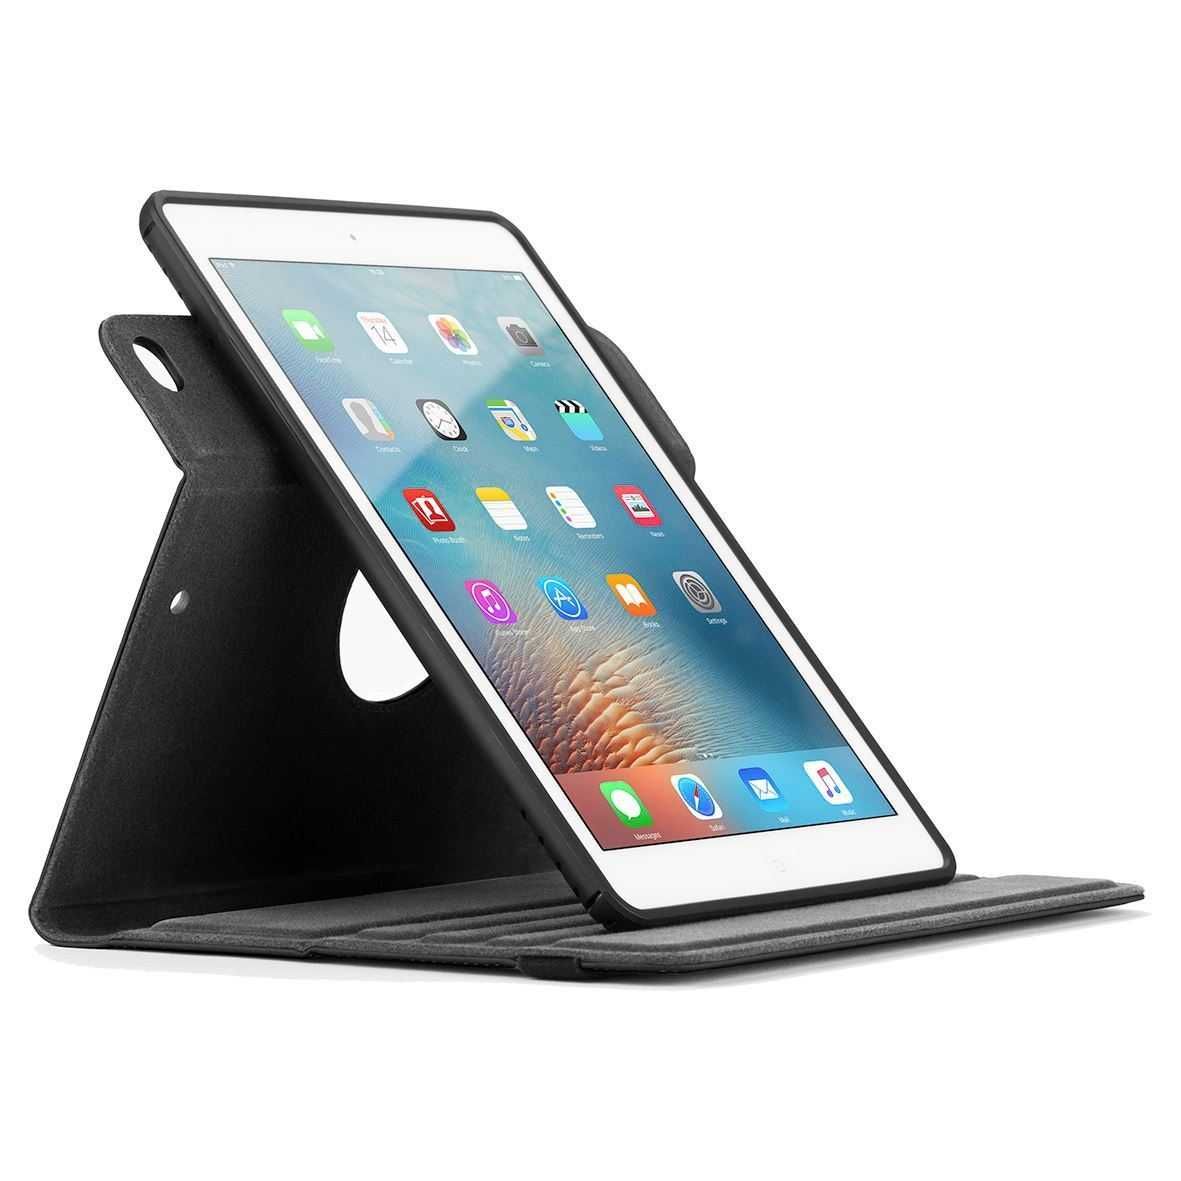 iPad Air (2013) 32GB Wi-Fi + 4G